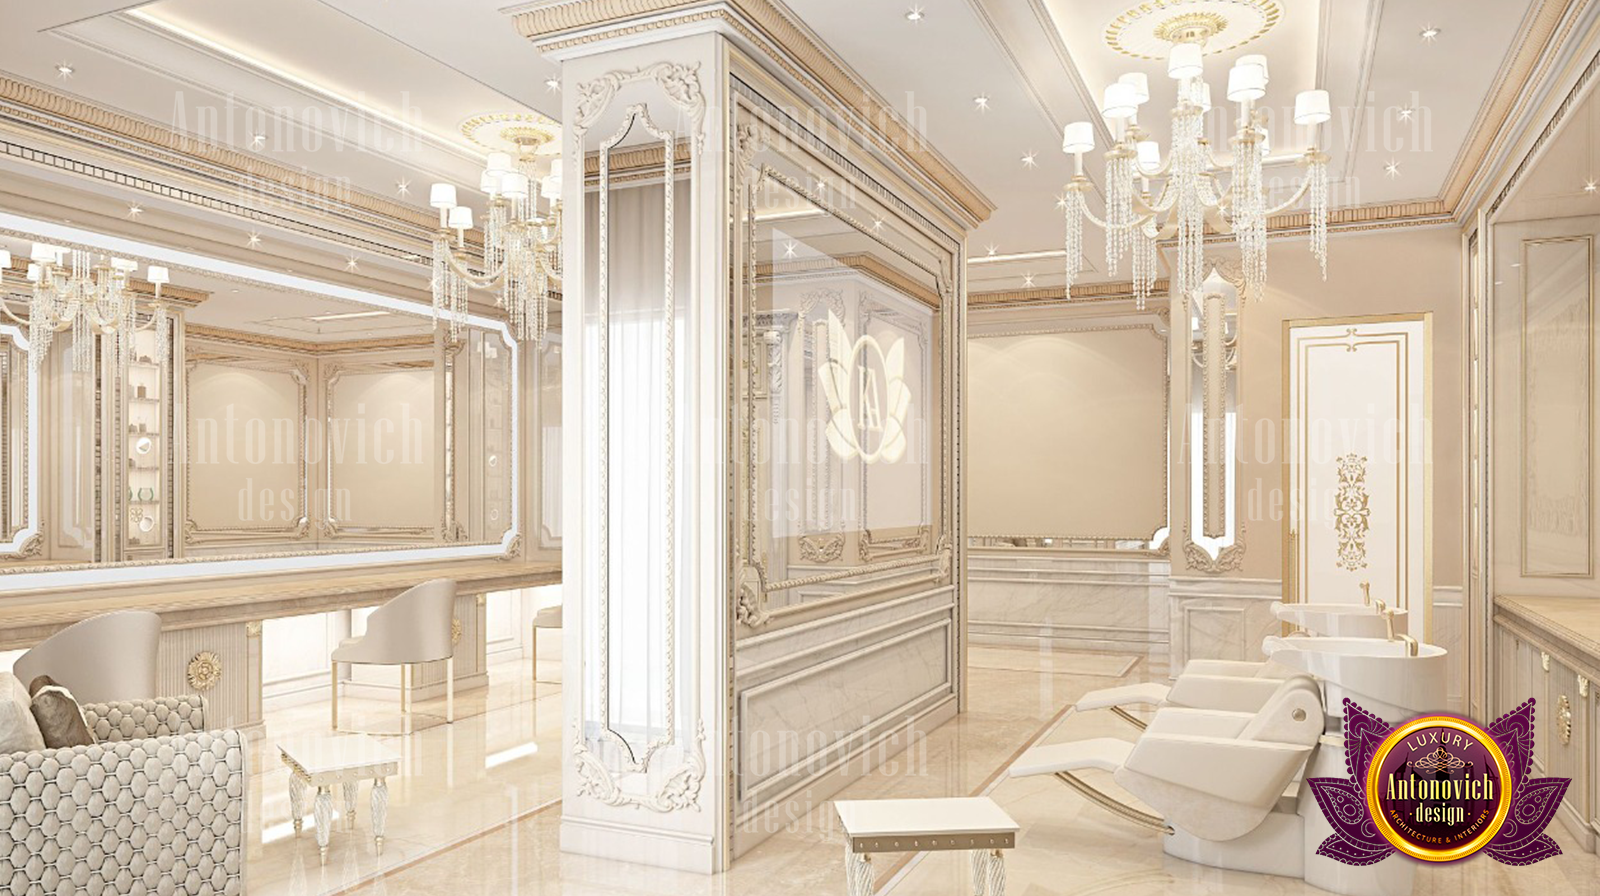 Luxury Spa Interior Design